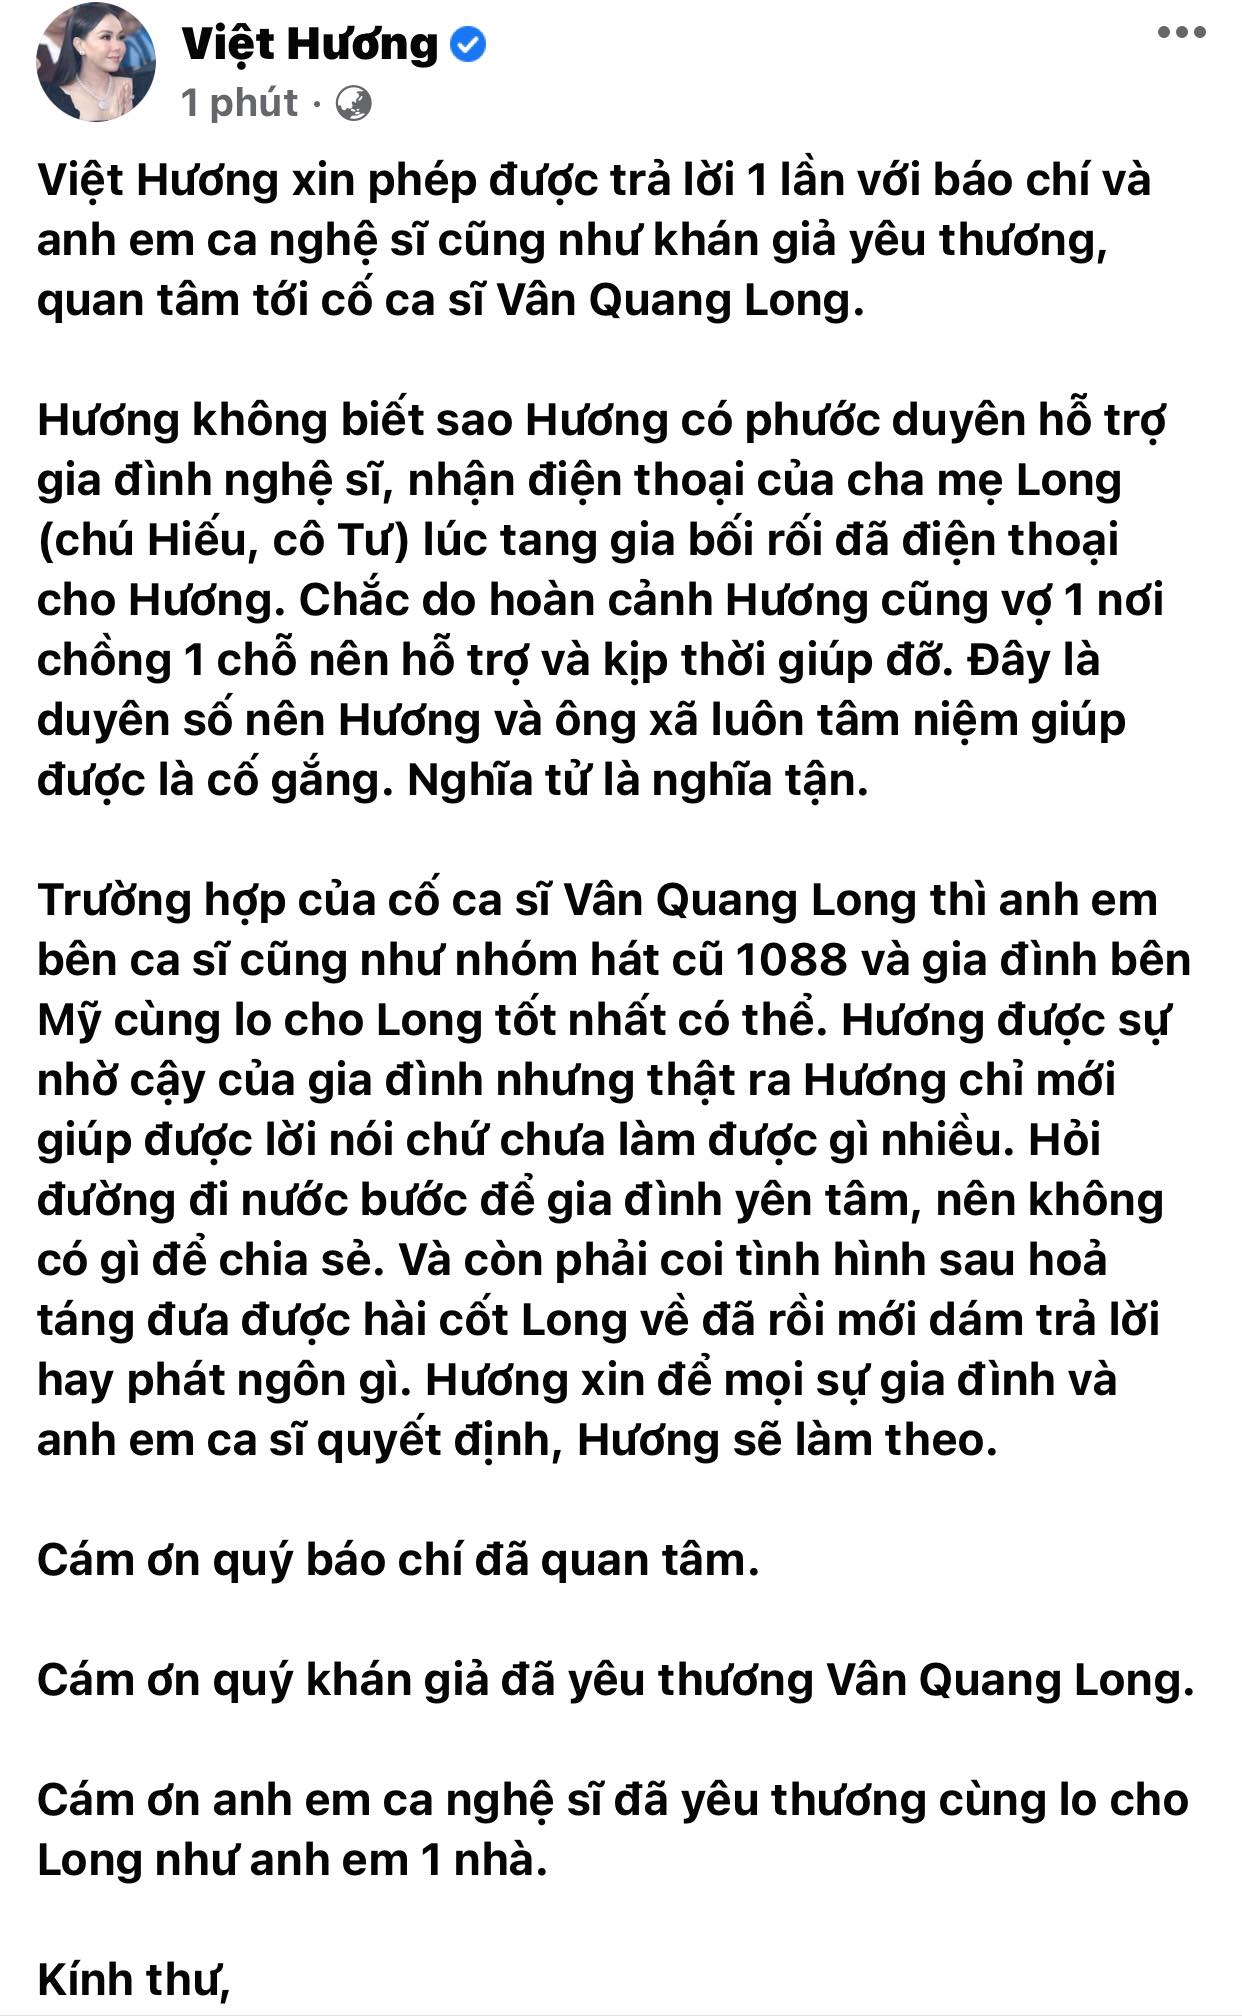 Viet-huong-lo-tang-su-cho-van-quang-long